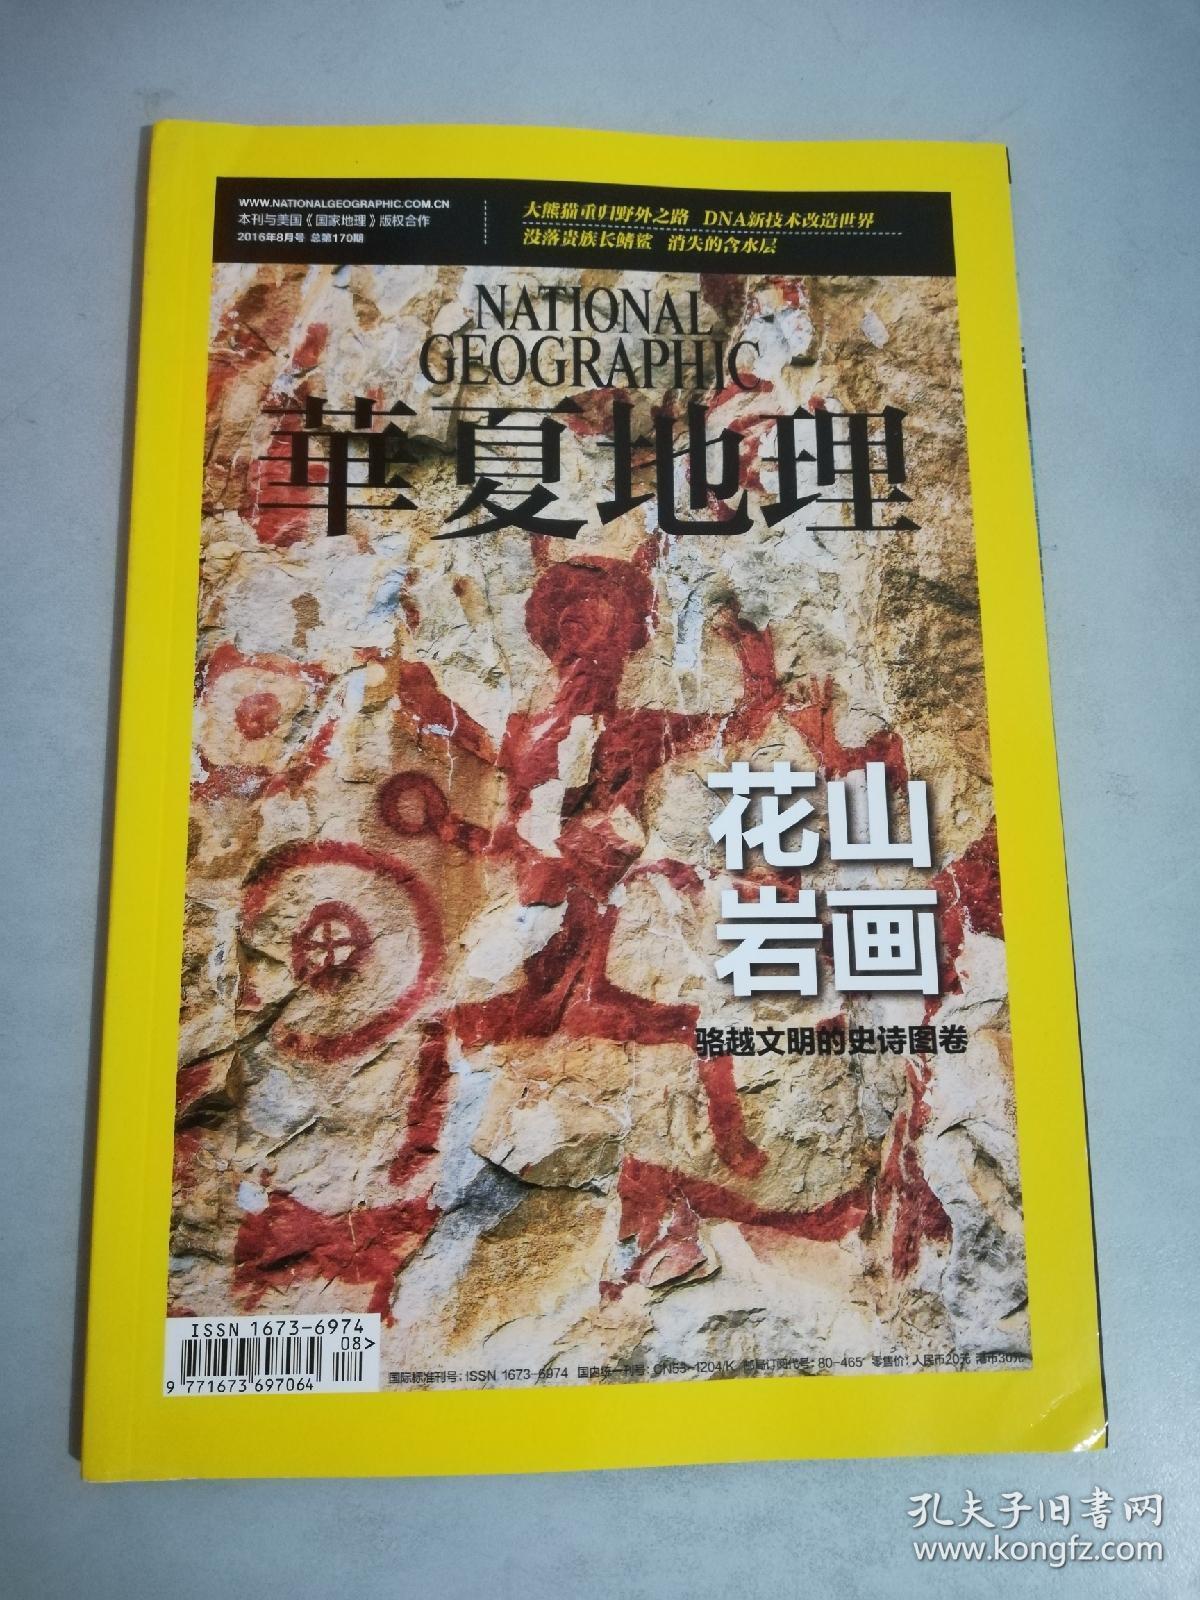 华夏地理杂志 2016年8月号 总170期 花山岩画 骆越文明的史诗图卷